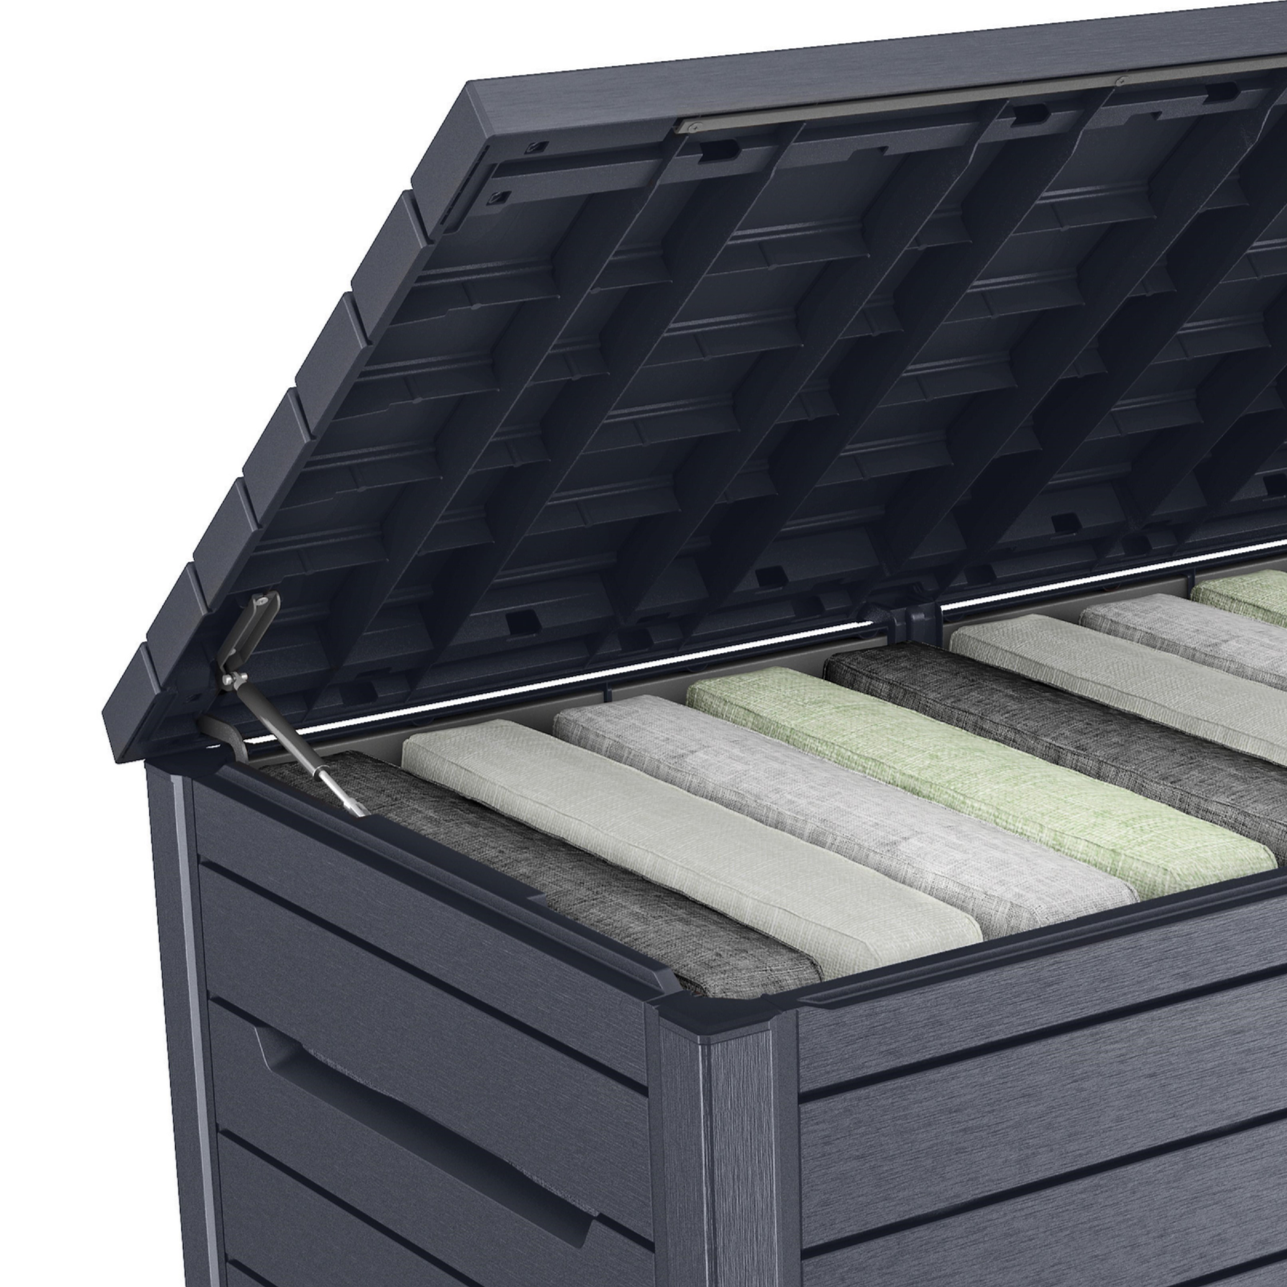 Keter XXL Deck Storage Box in Anthracite Outdoor Storage Keter   